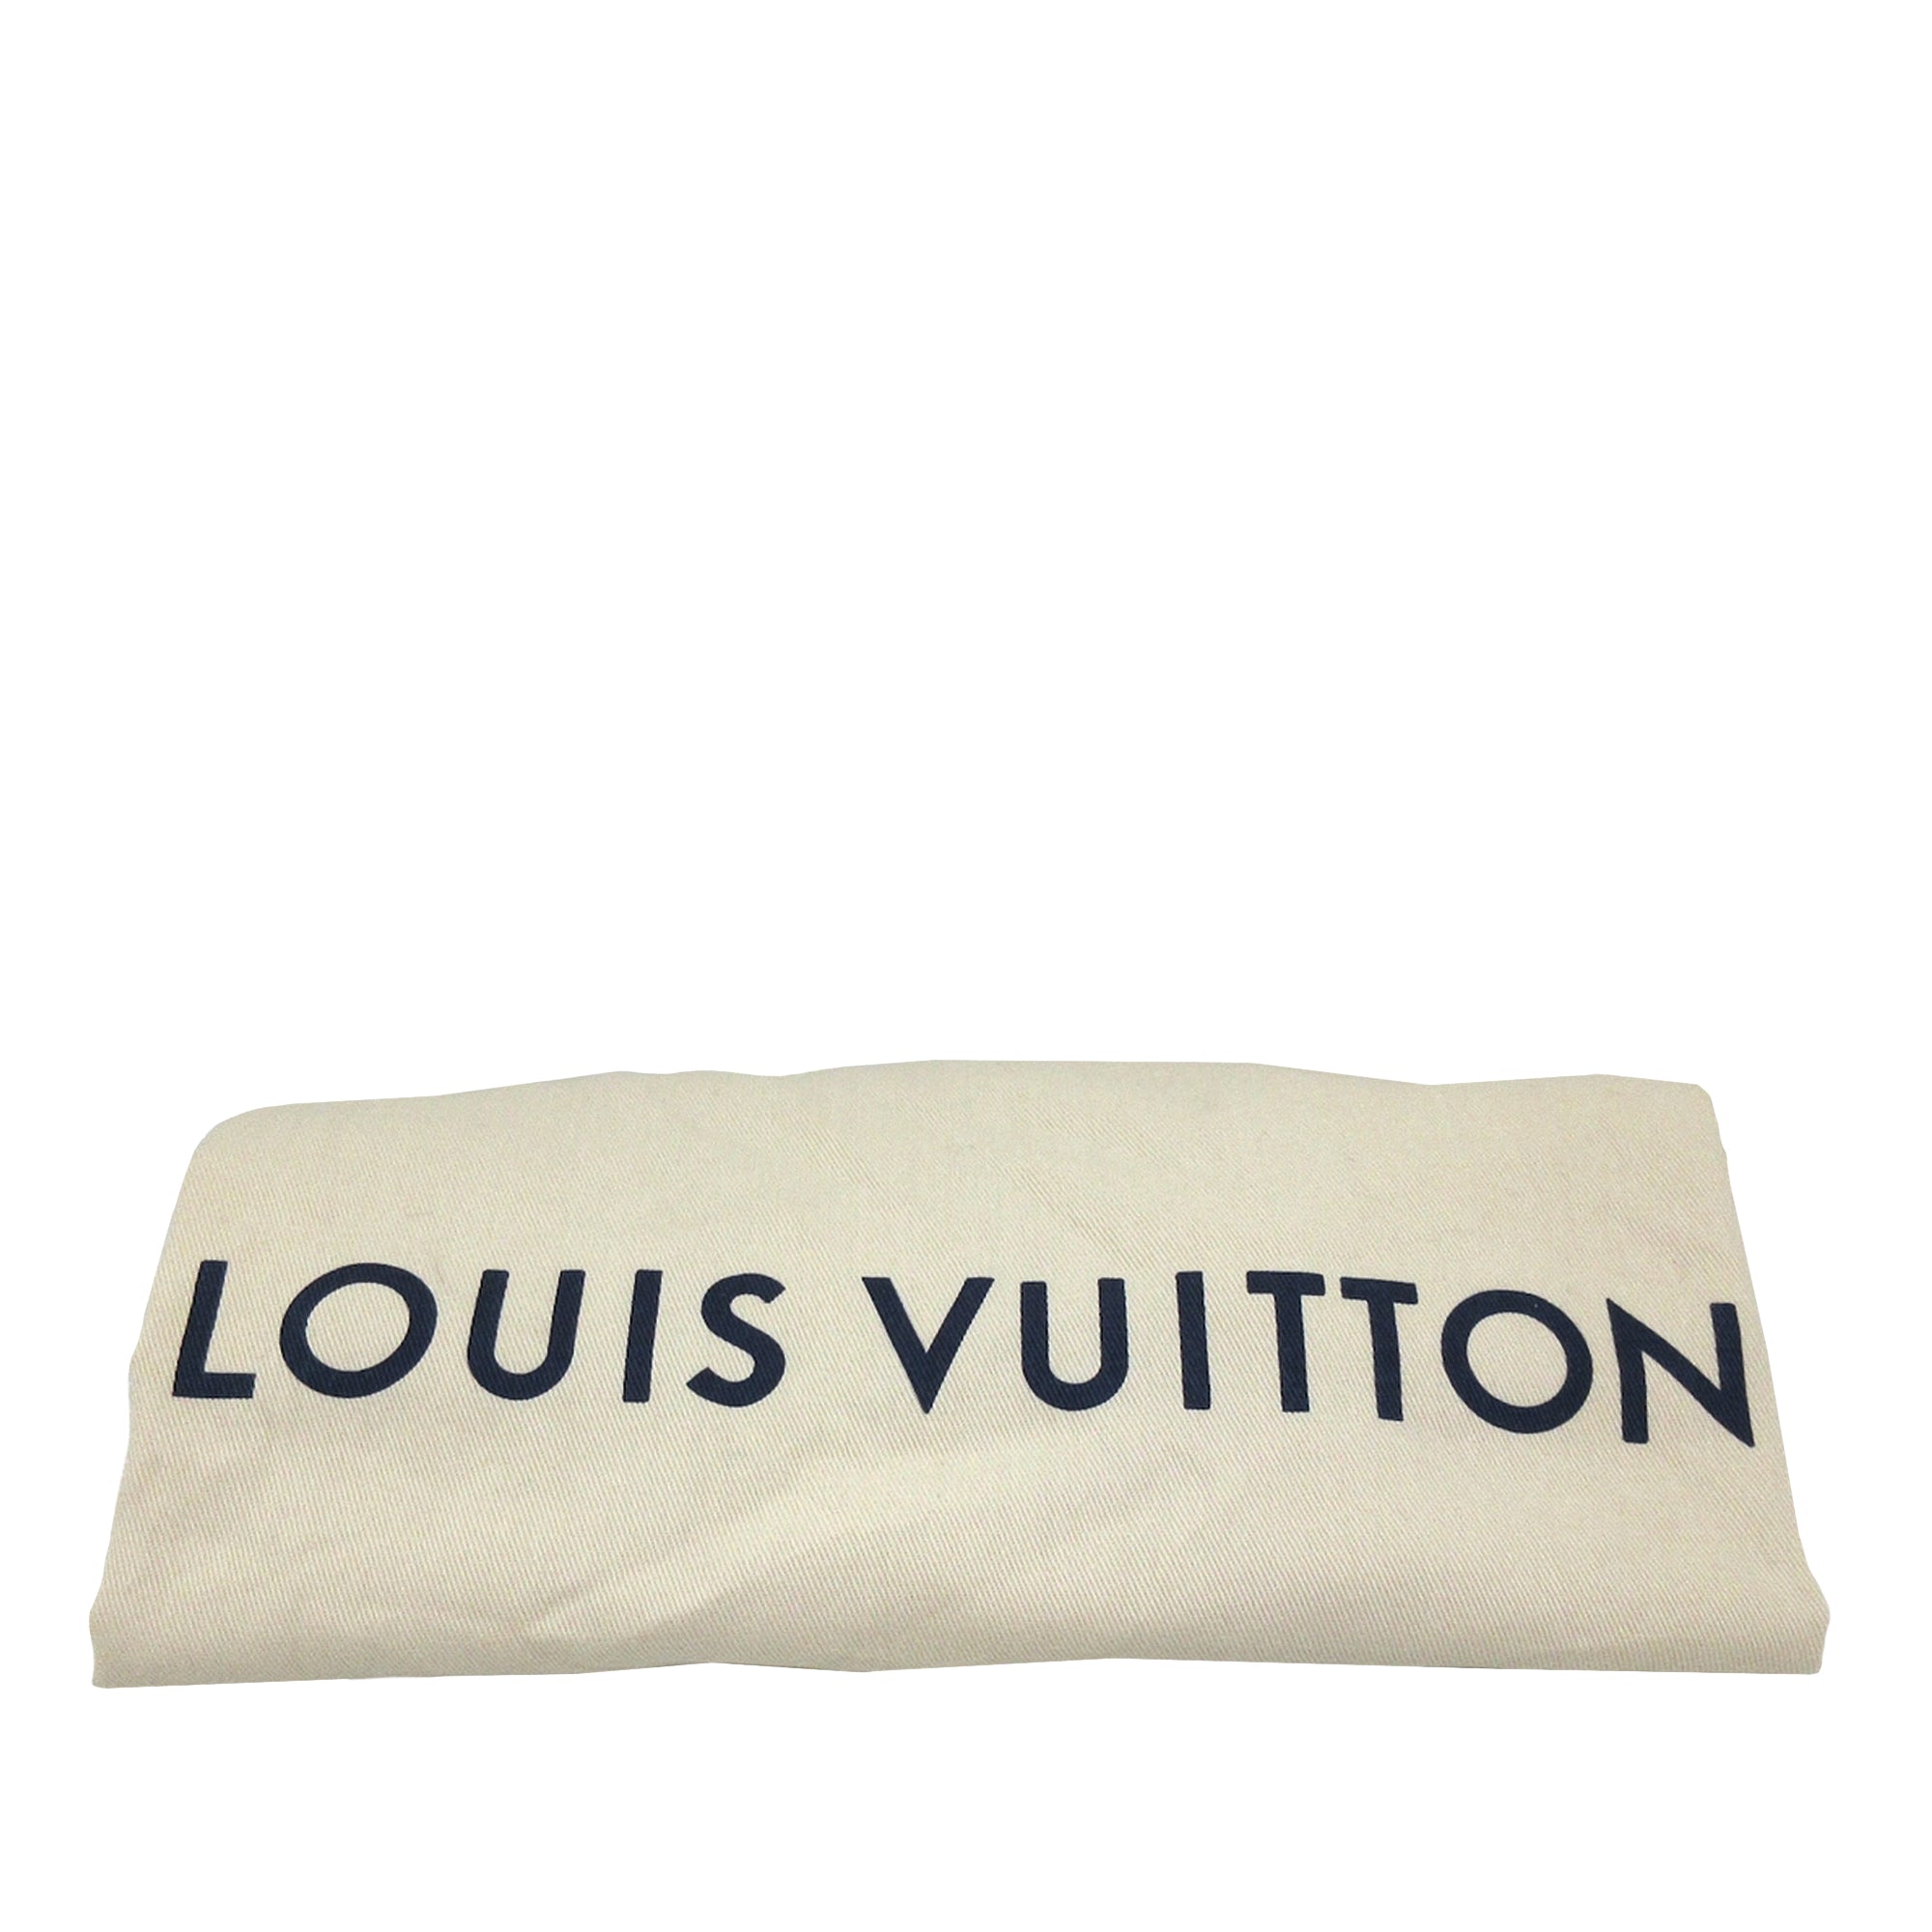 Louis Vuitton, Bags, Authentic Rare Monogram Louis Vuitton Urs Fischer Lv  Pochette Designer Bag